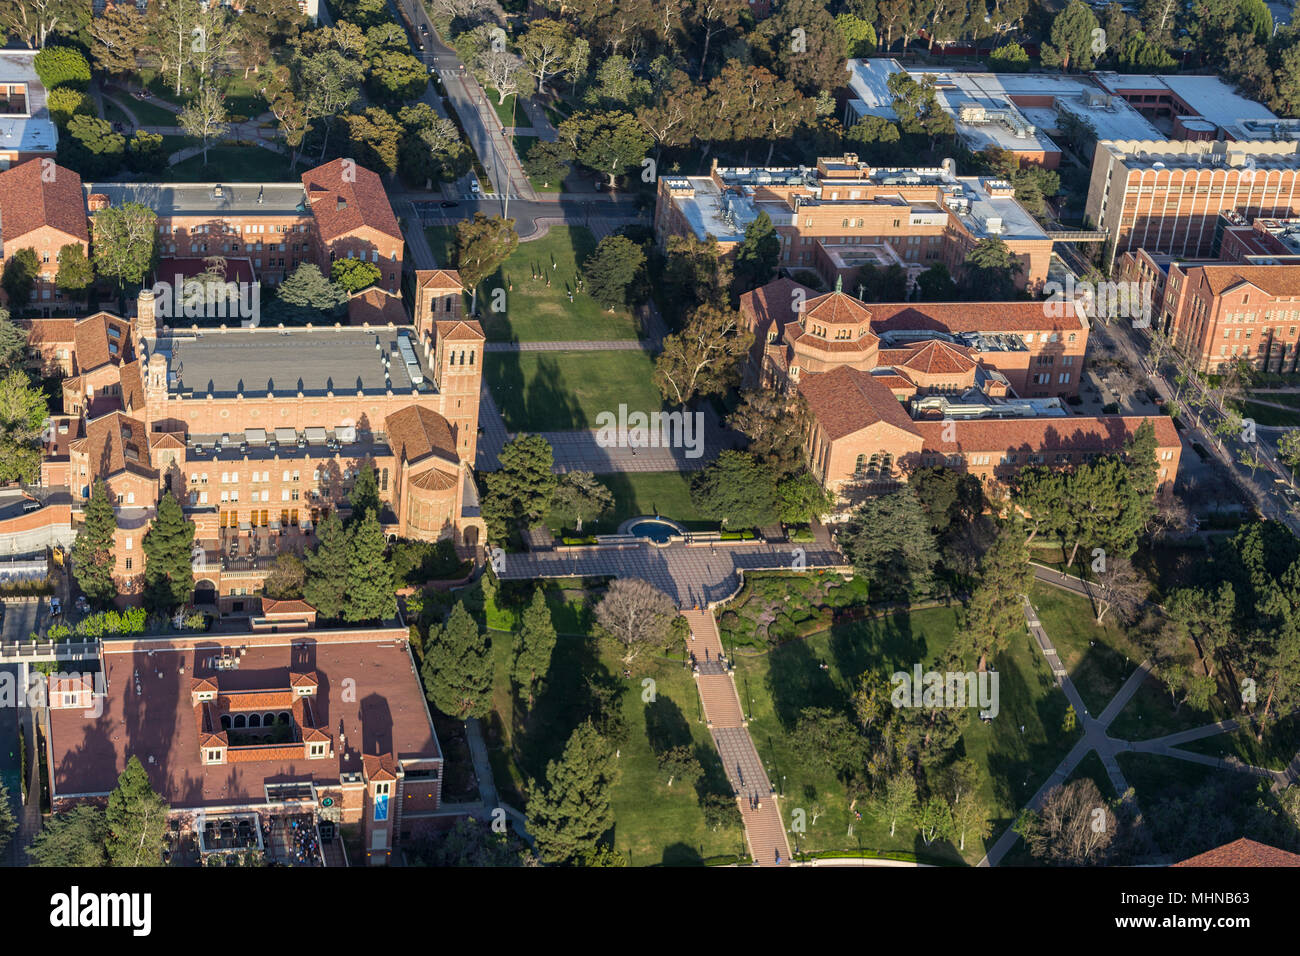 Los Angeles, Californie, USA - 18 Avril 2018 : Après-midi vue aérienne de quad, étapes et bâtiments historiques sur le campus de l'UCLA près de Westwood. Banque D'Images